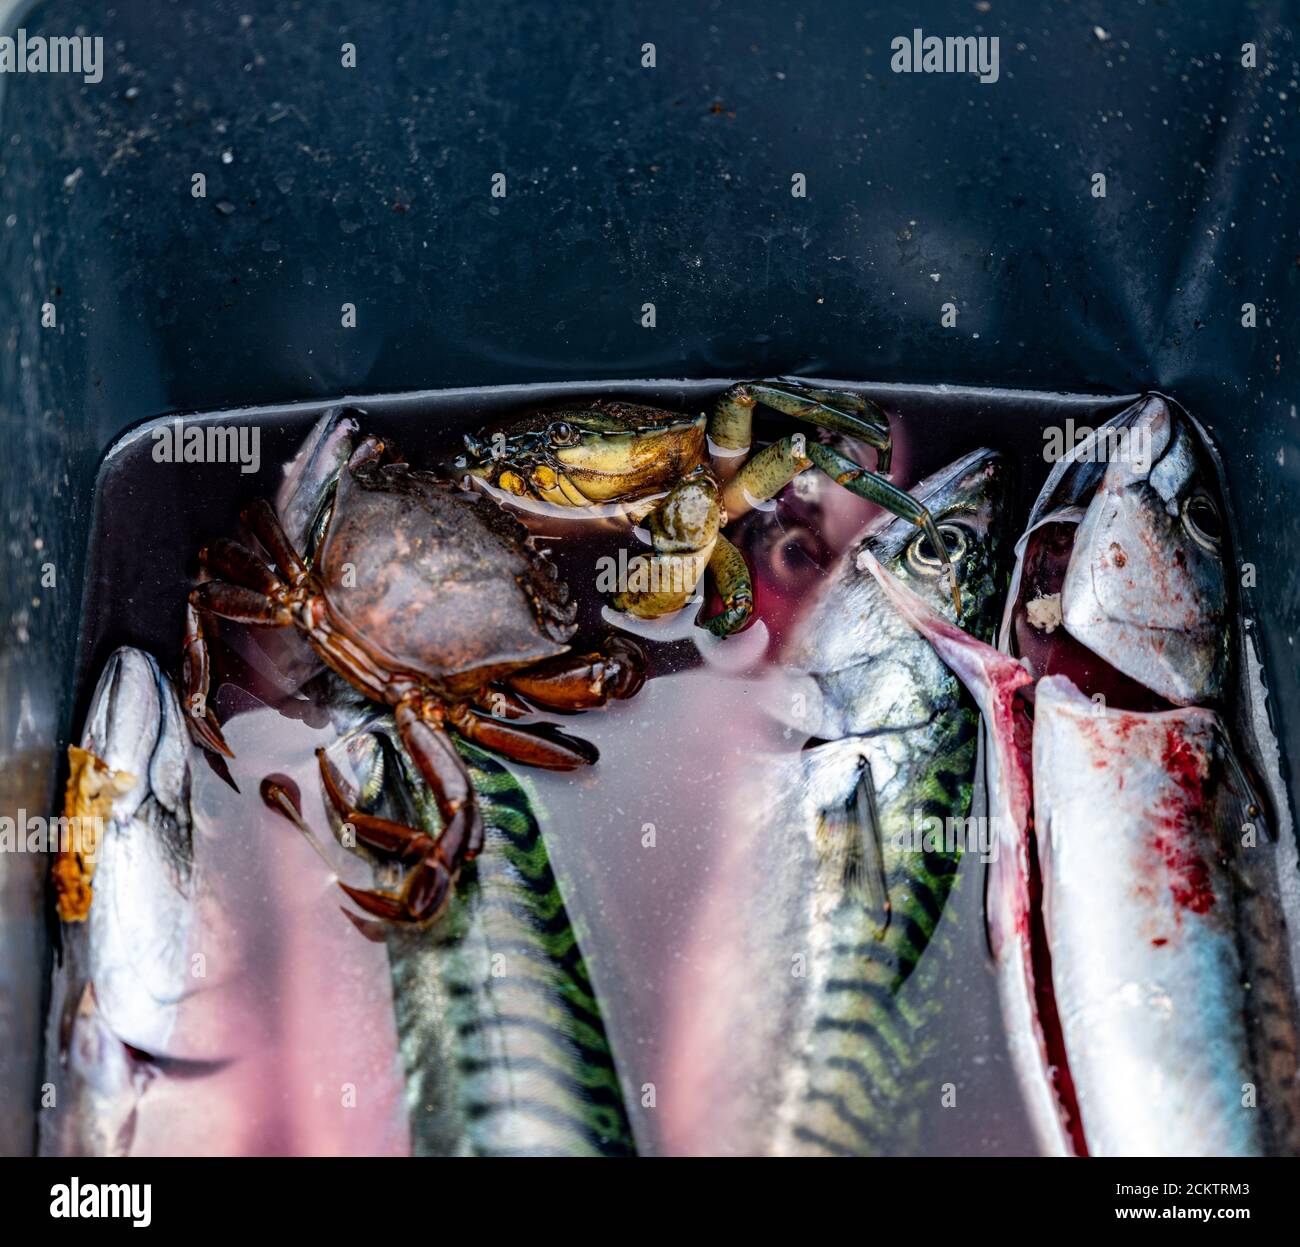 Ein frischer Fang von Makrelen und Krabben in einem Eimer. Bild aus Malmö, Schweden Stockfoto